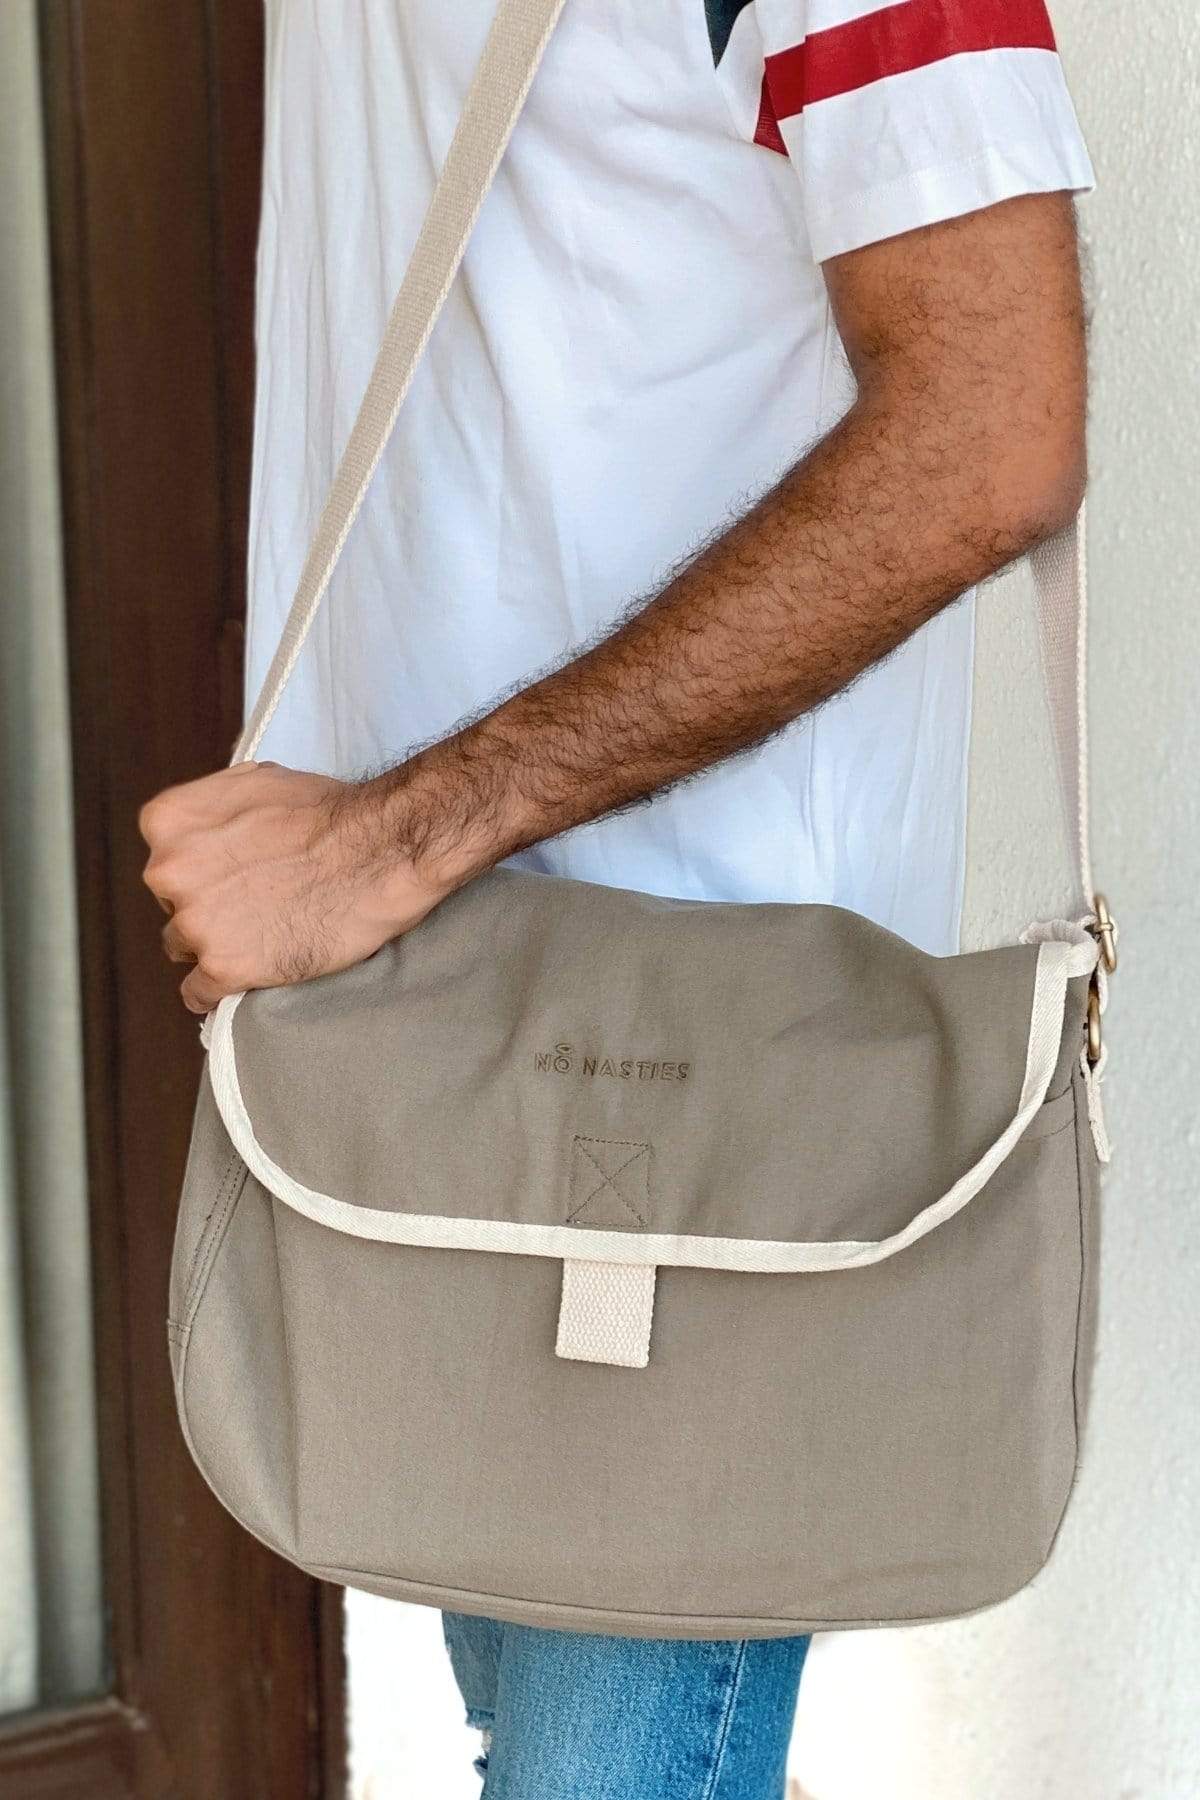 Barcelona Messenger Bag-No Nasties - Organic Cotton Clothing